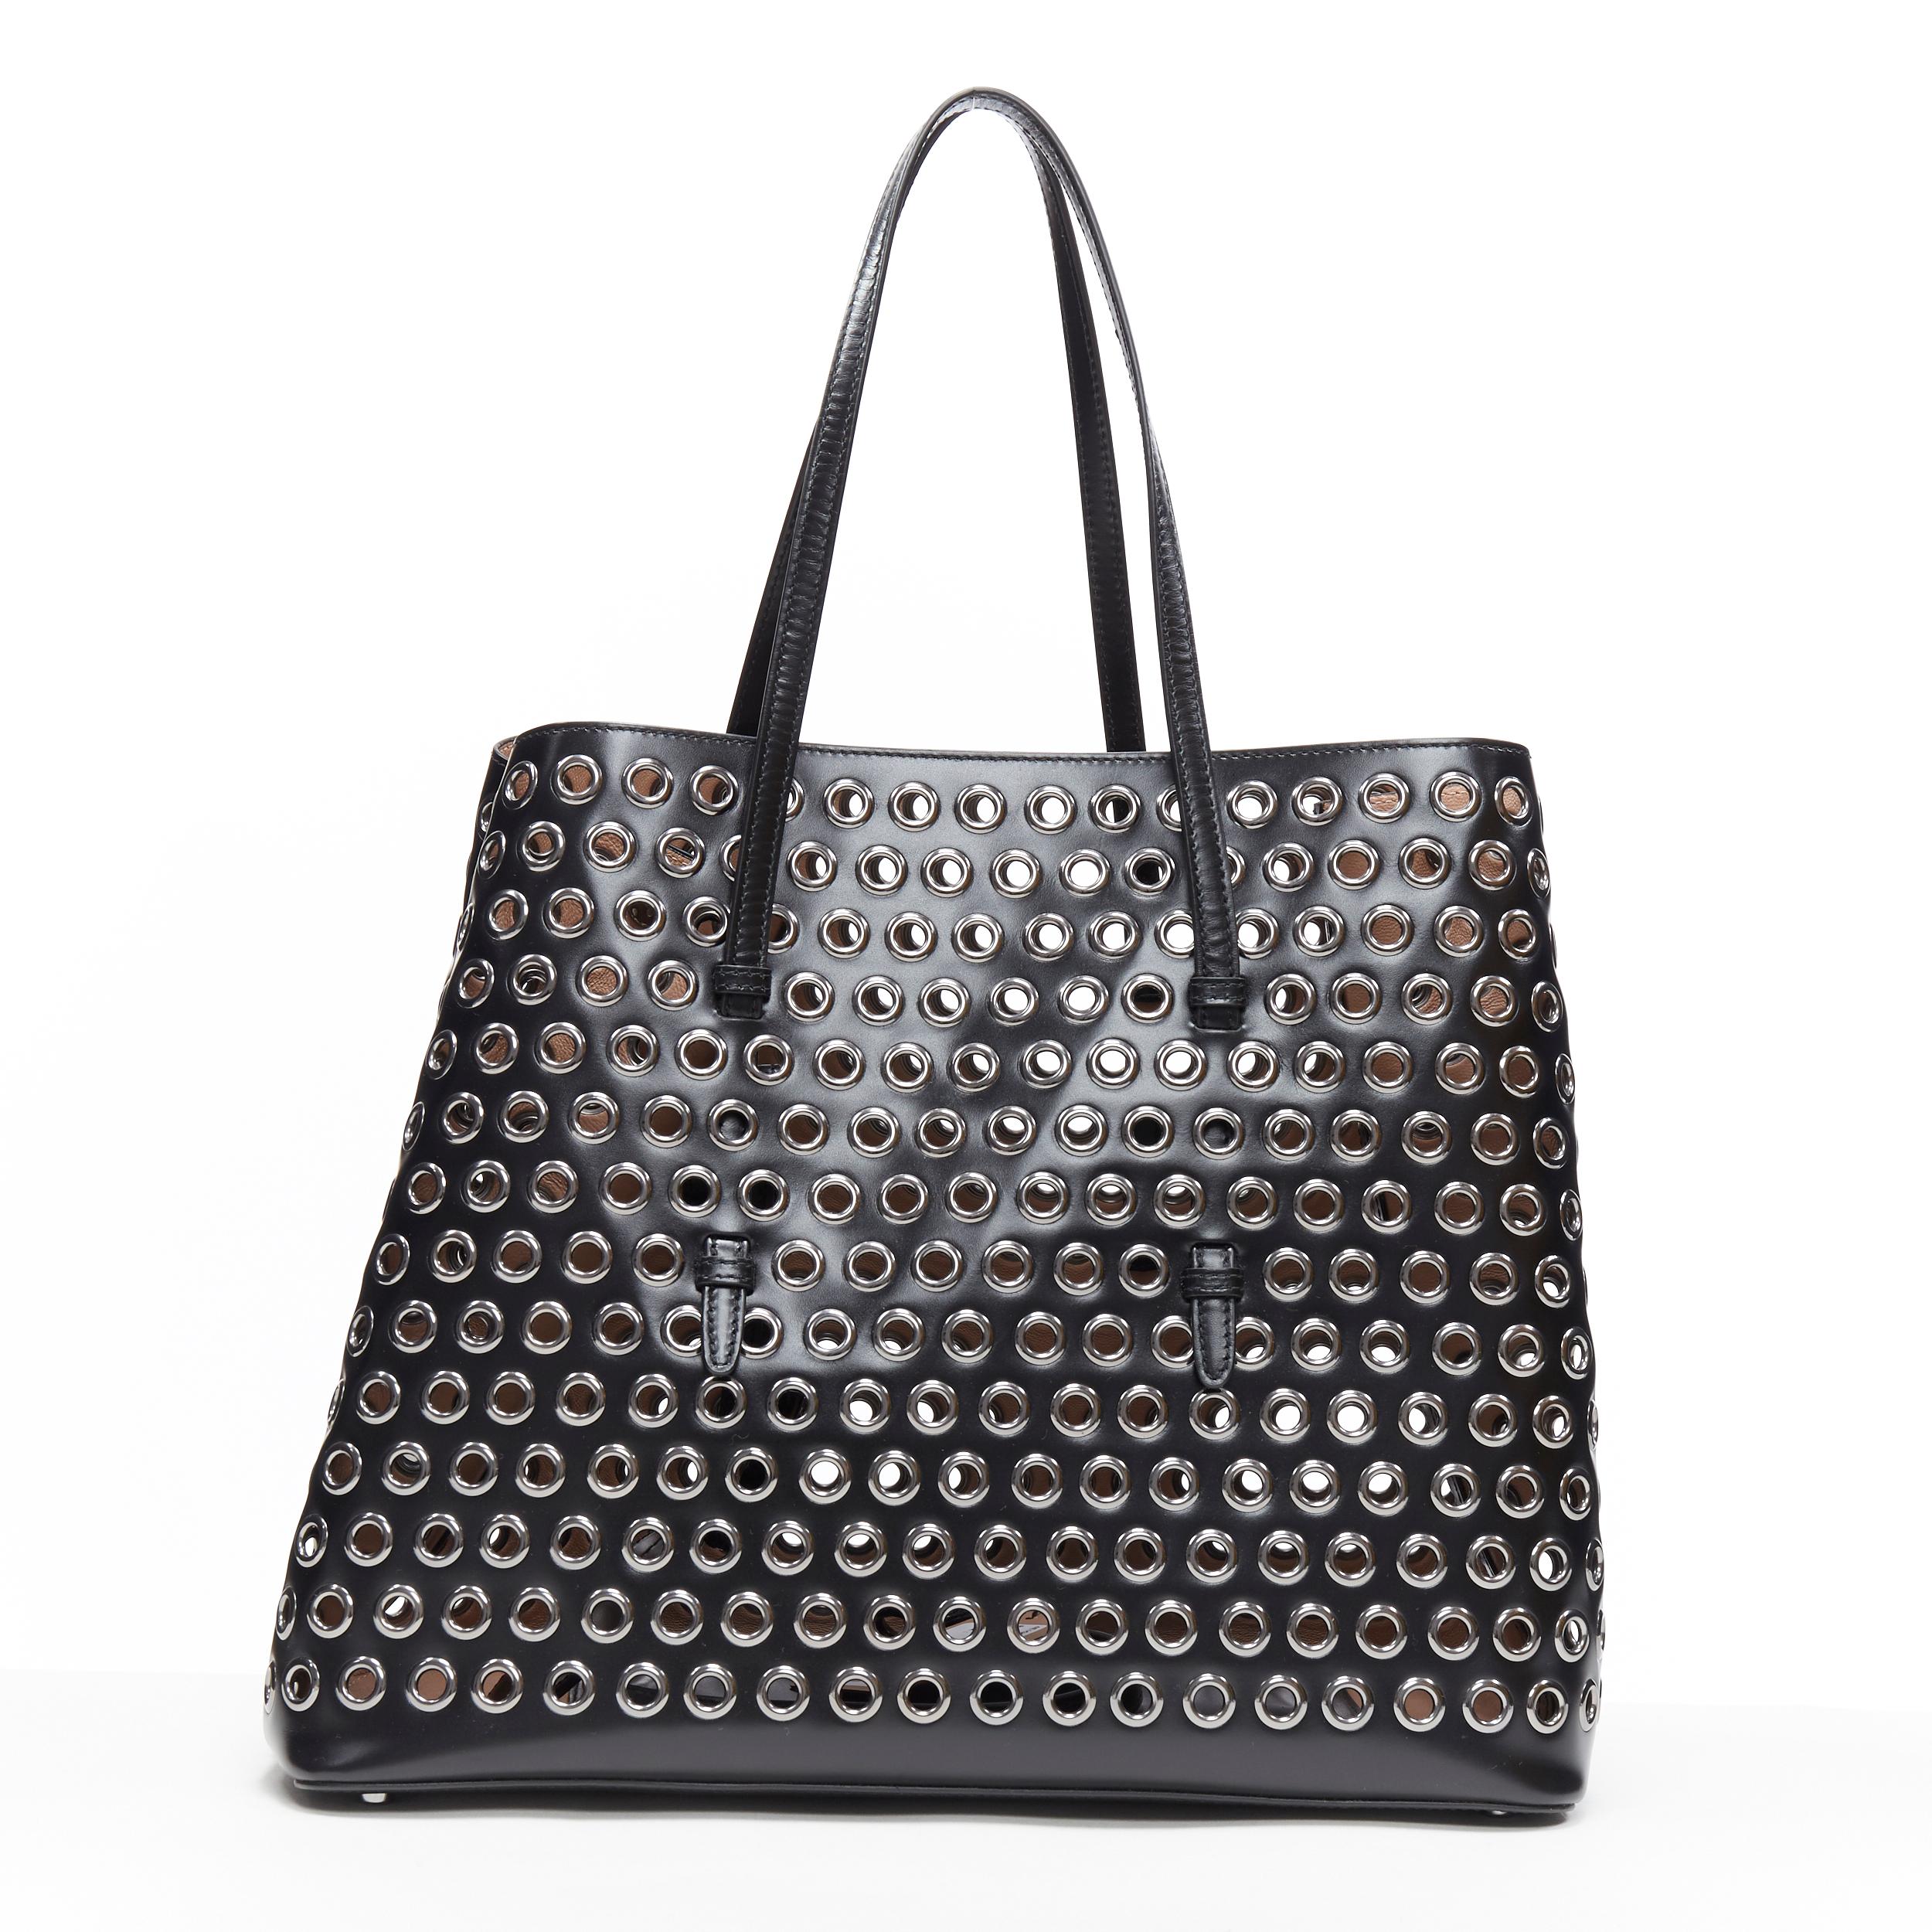  nouveau ALAIA sac fourre-tout extensible grand format en cuir noir et métal perforé Pour femmes 